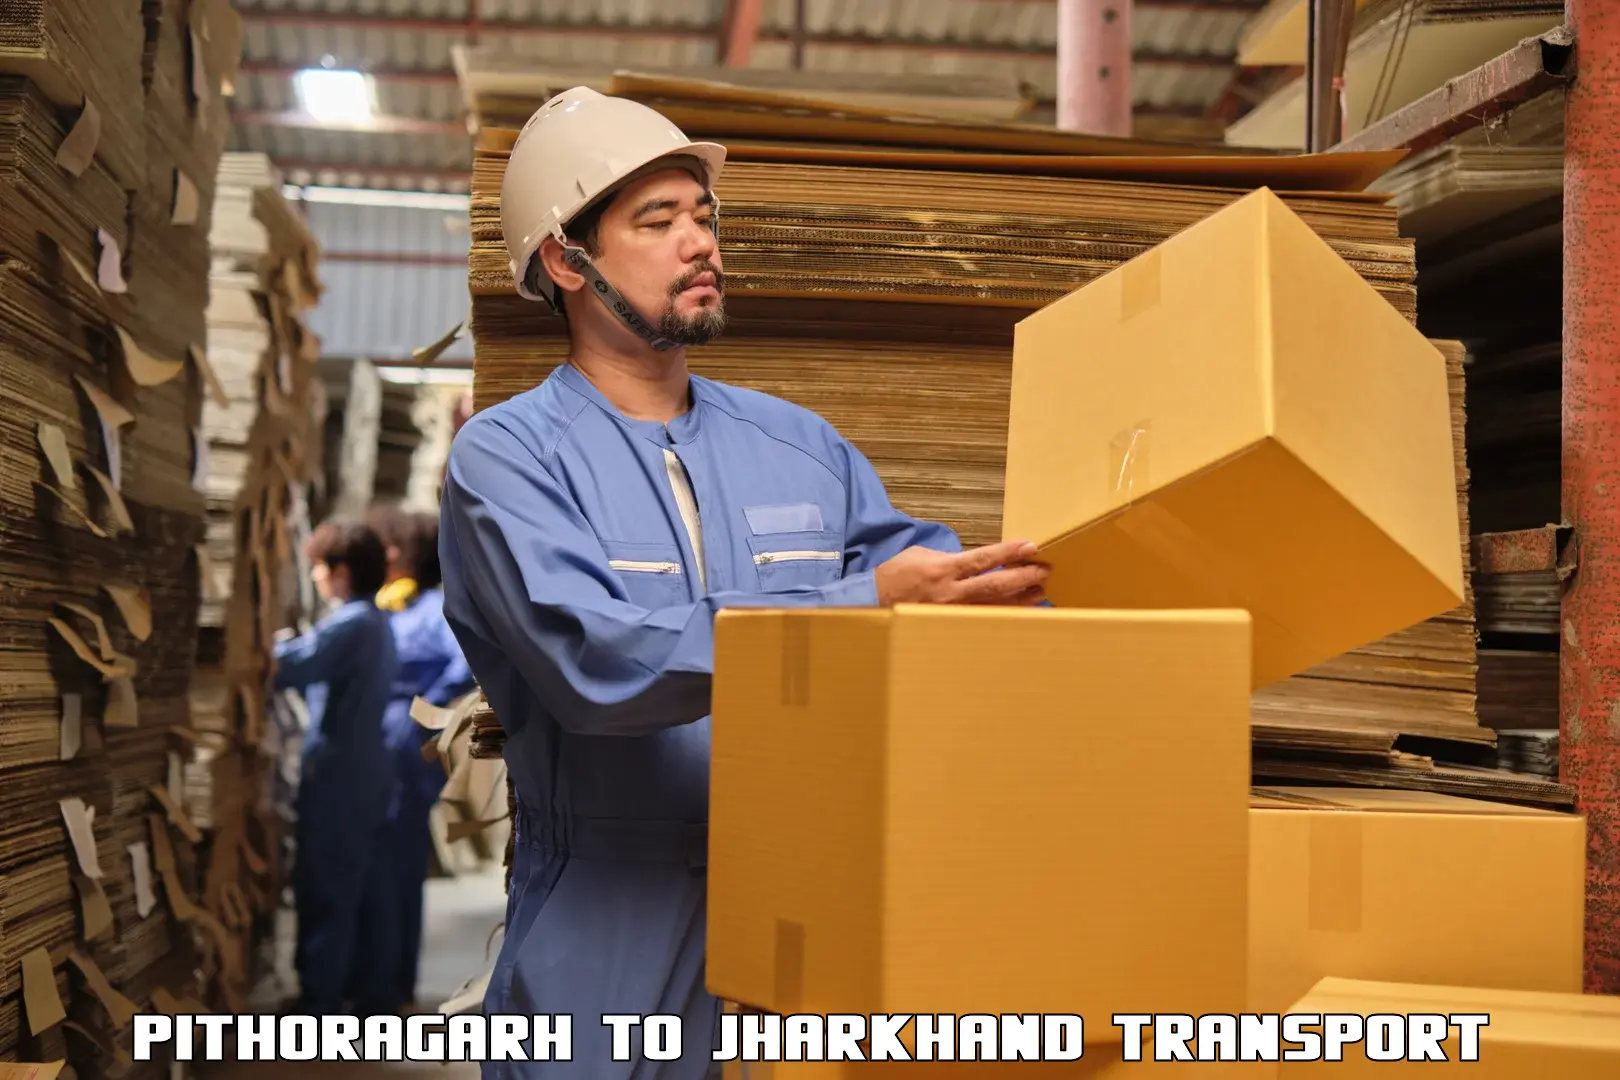 Furniture transport service Pithoragarh to Seraikela Kharsawan